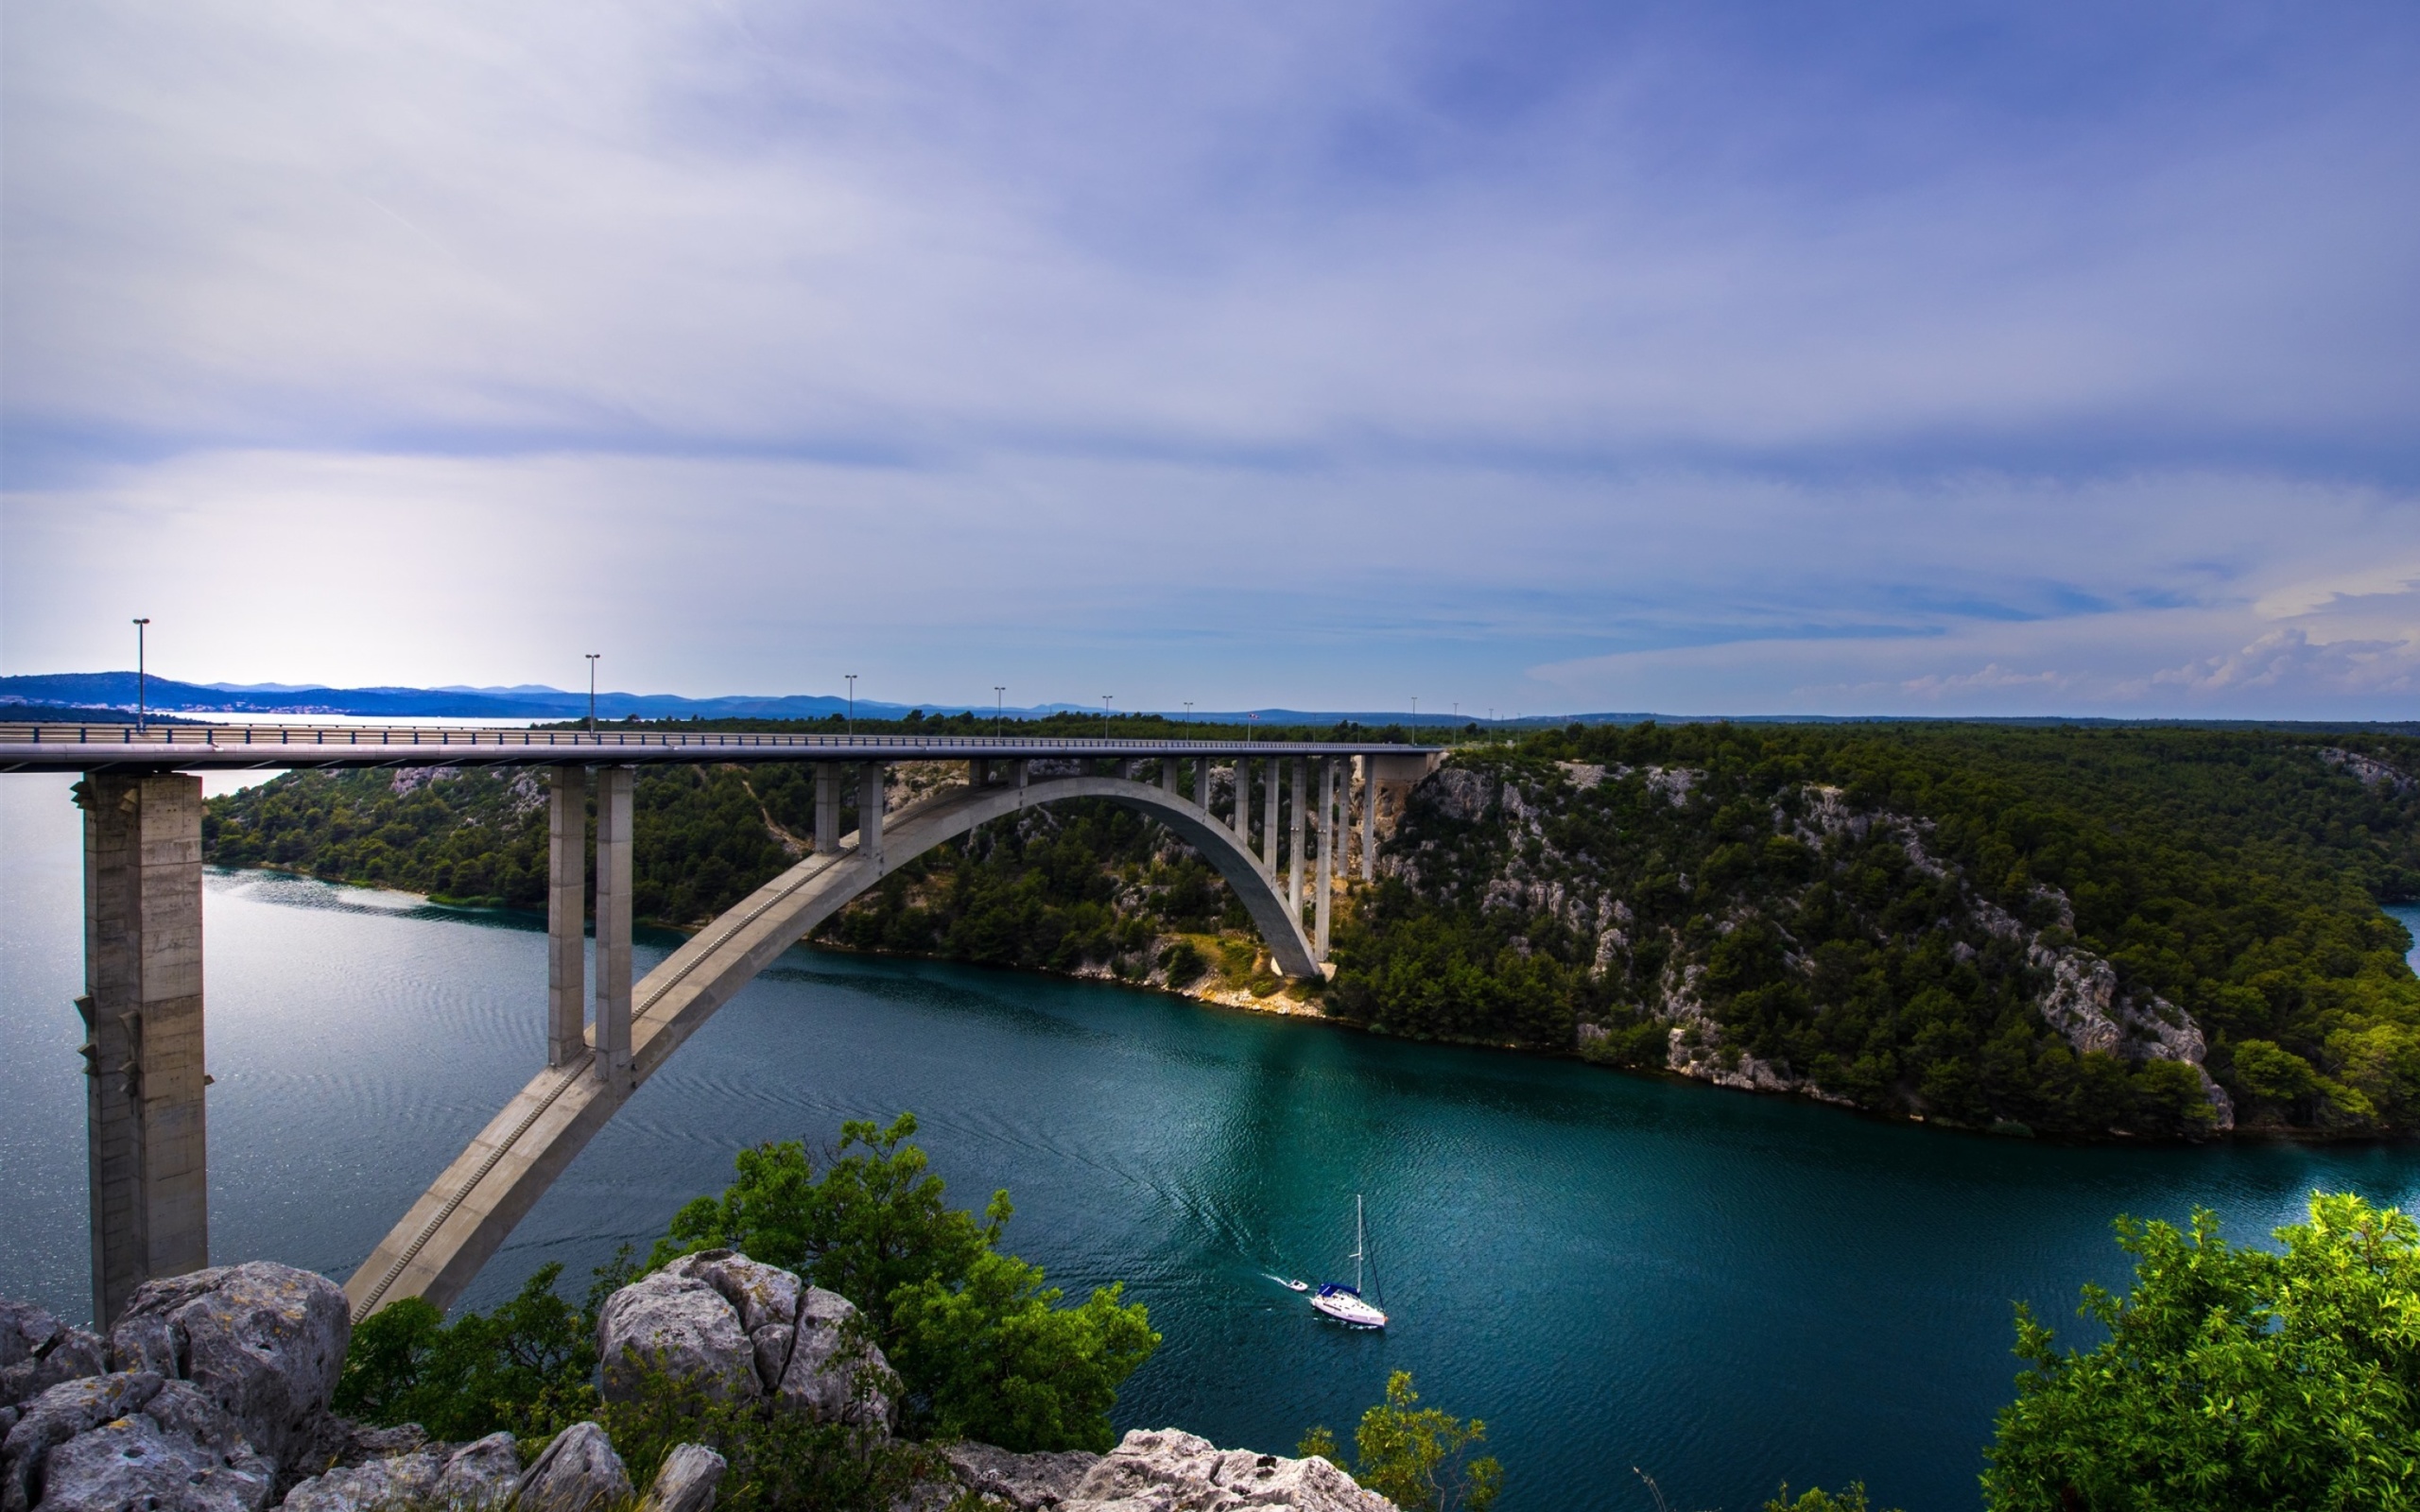 Sfondi Krka River Croatia 2560x1600